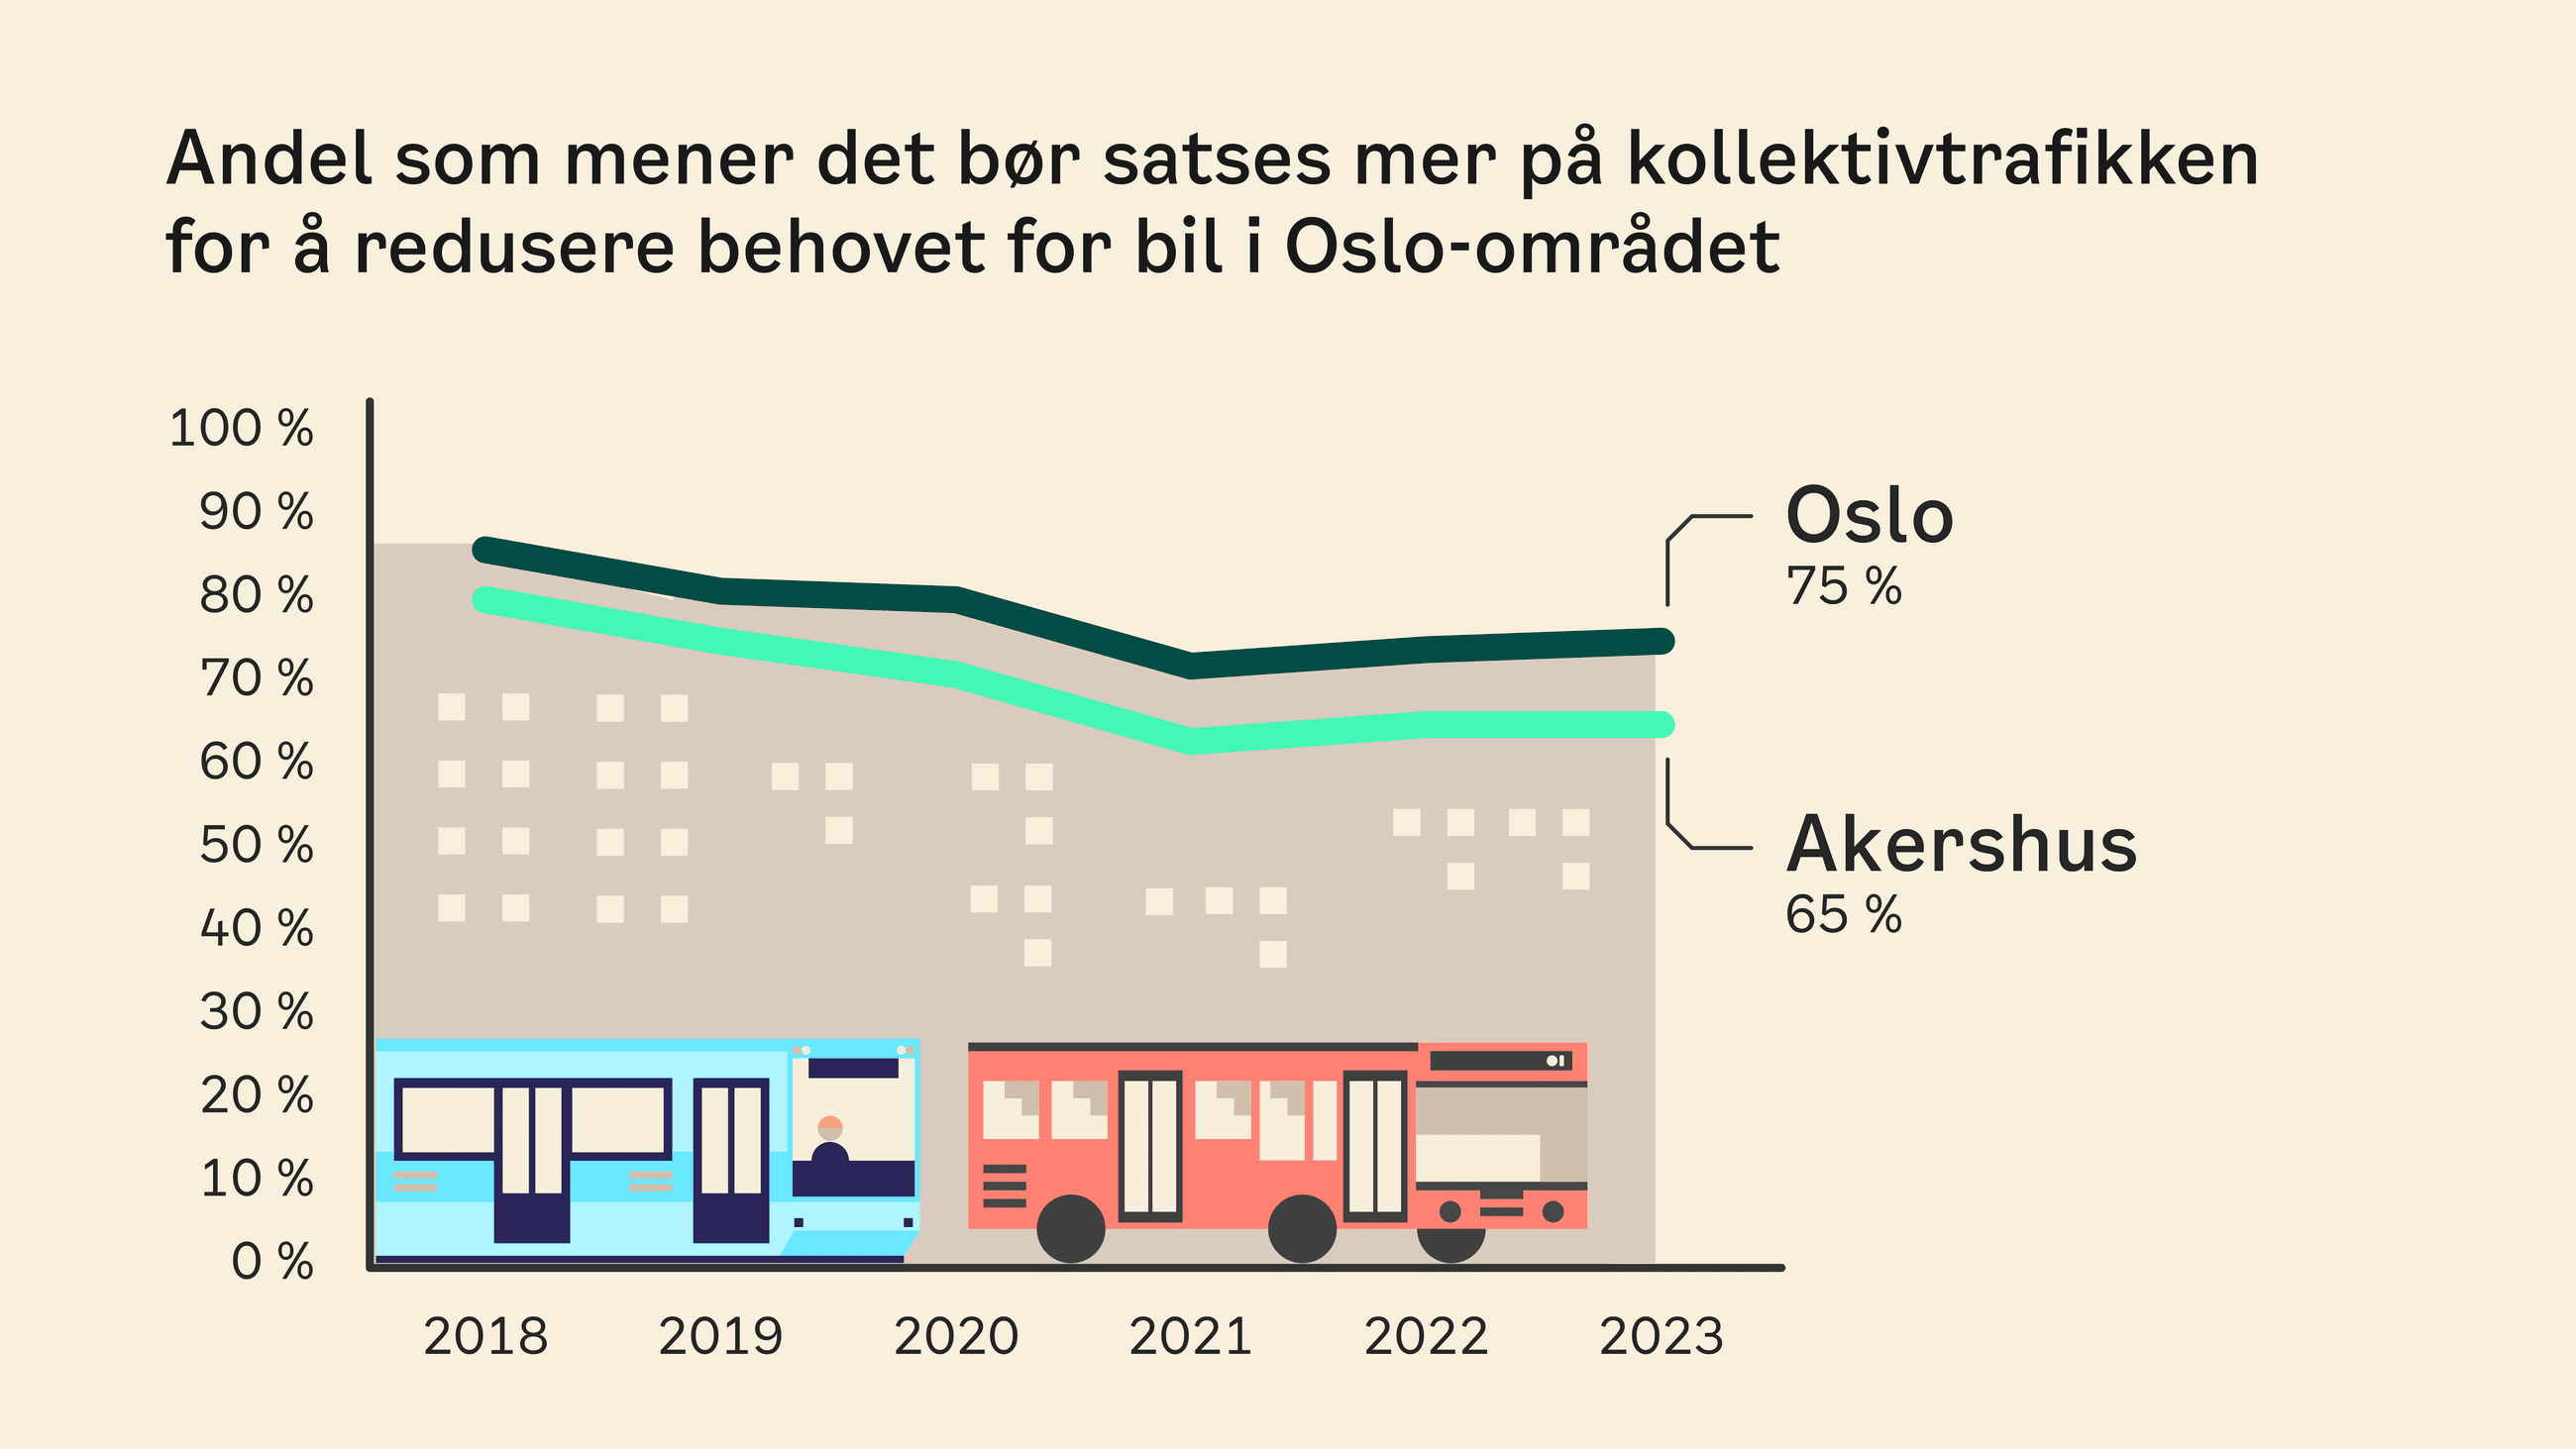 Graf som viser andelene i Oslo og Akershus som er enige i at det bør satses mer på kollektivtrafikken siden 2018